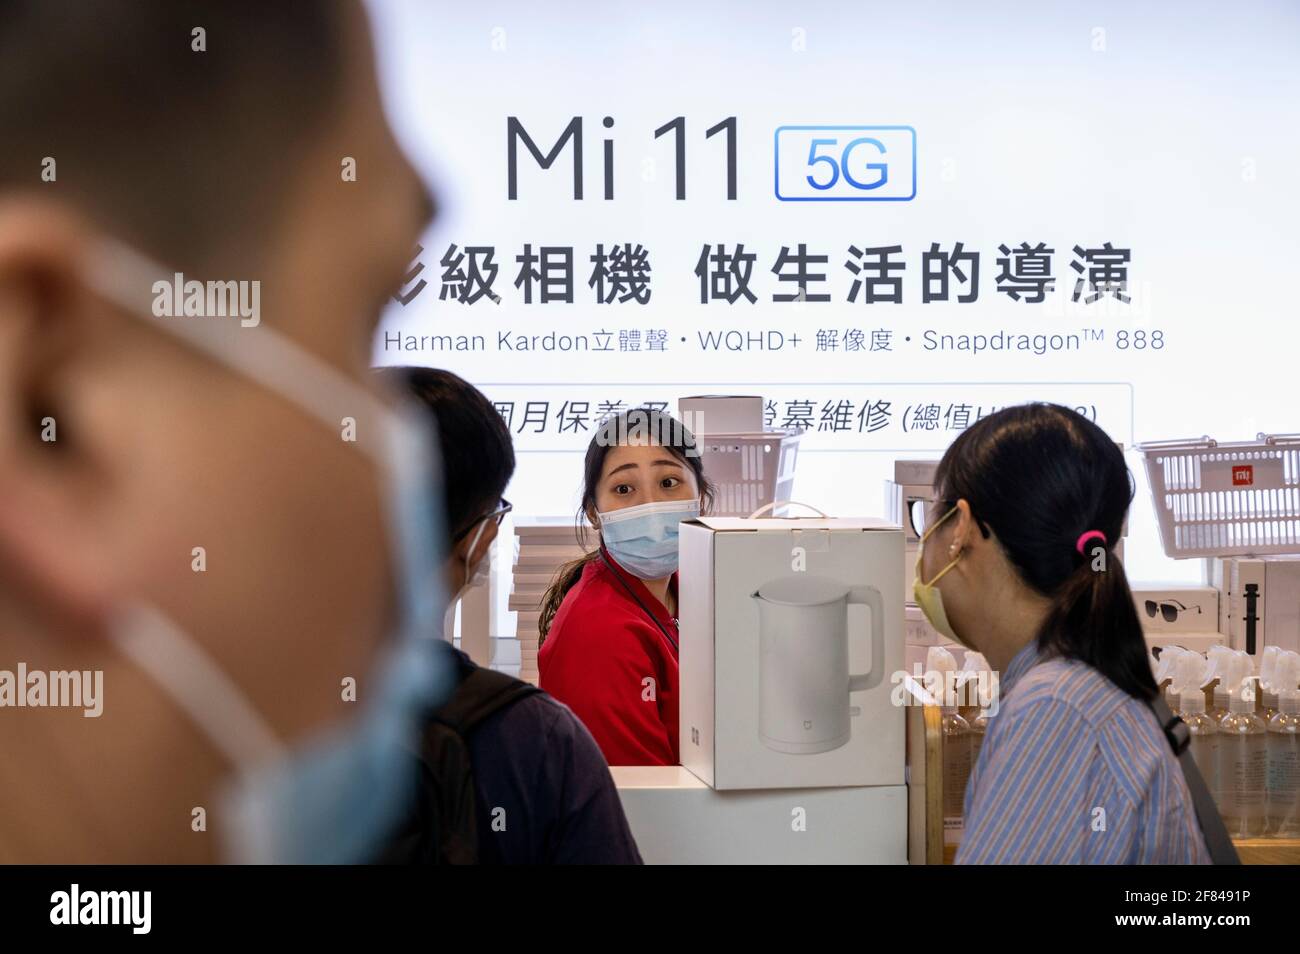 Gli acquirenti si accodano in coda per acquistare i prodotti Xiaomi presso la multinazionale cinese della tecnologia e dell'elettronica, il principale negozio Xiaomi di Hong Kong. Foto Stock